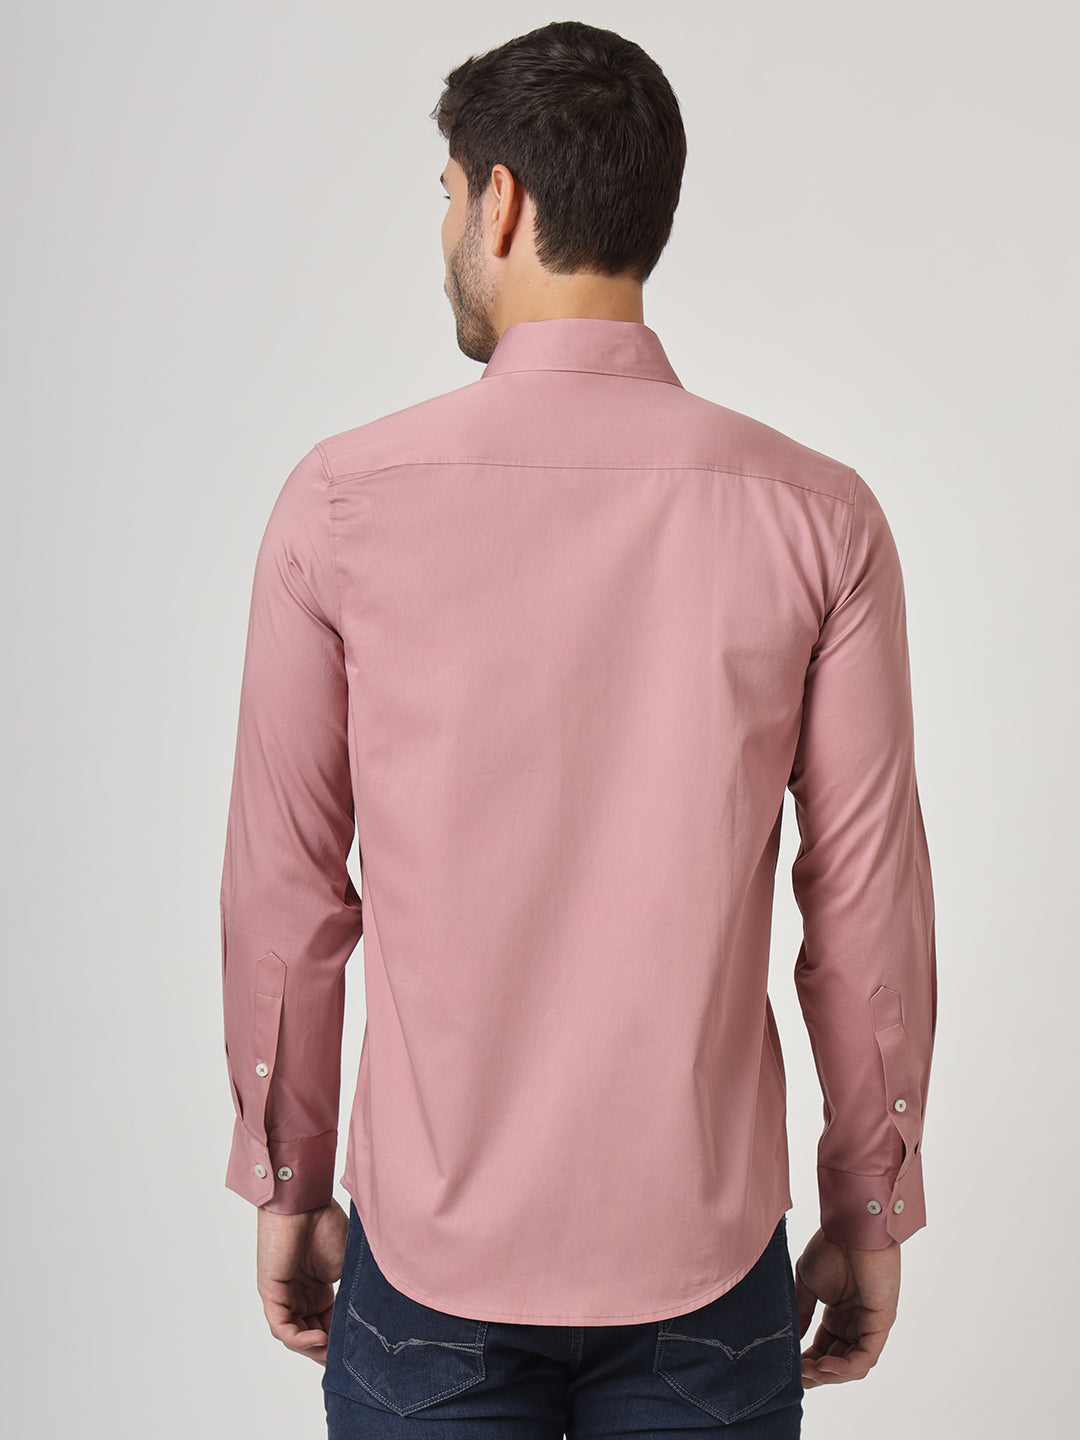 Premium Cotton Lycra Rose Pink Shirt